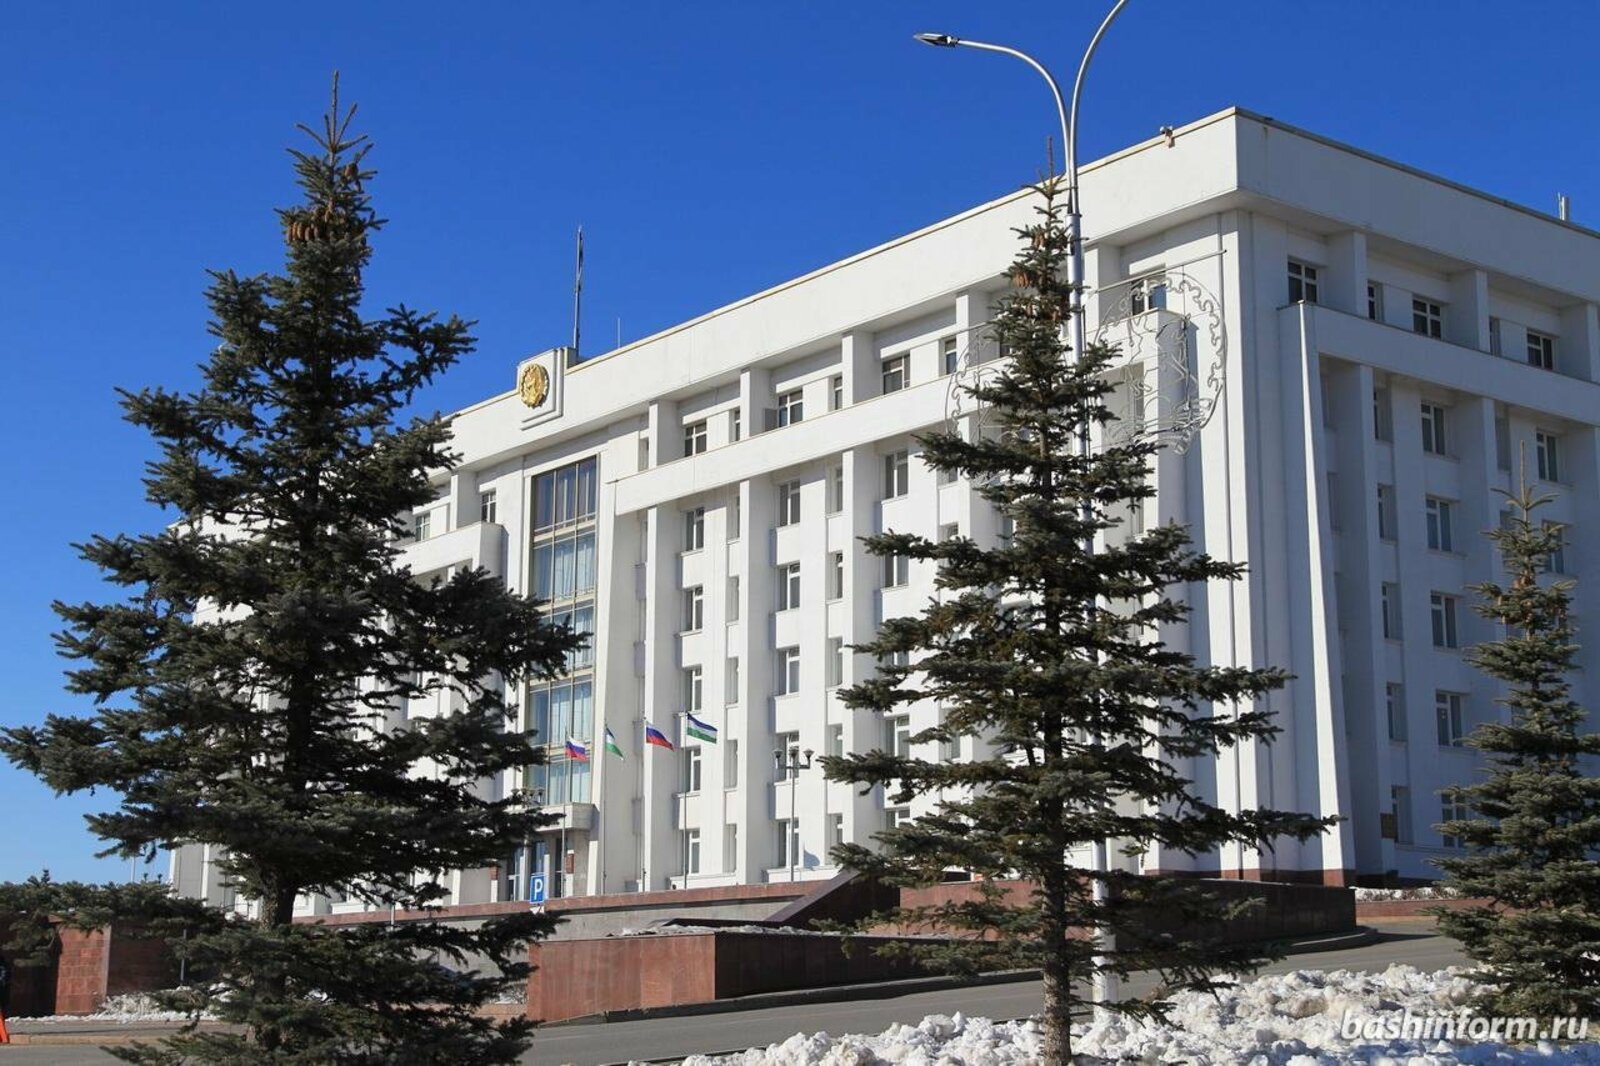 Глава РБ  Р.Ф. Хабиров проведет оперативку в Правительстве РБ